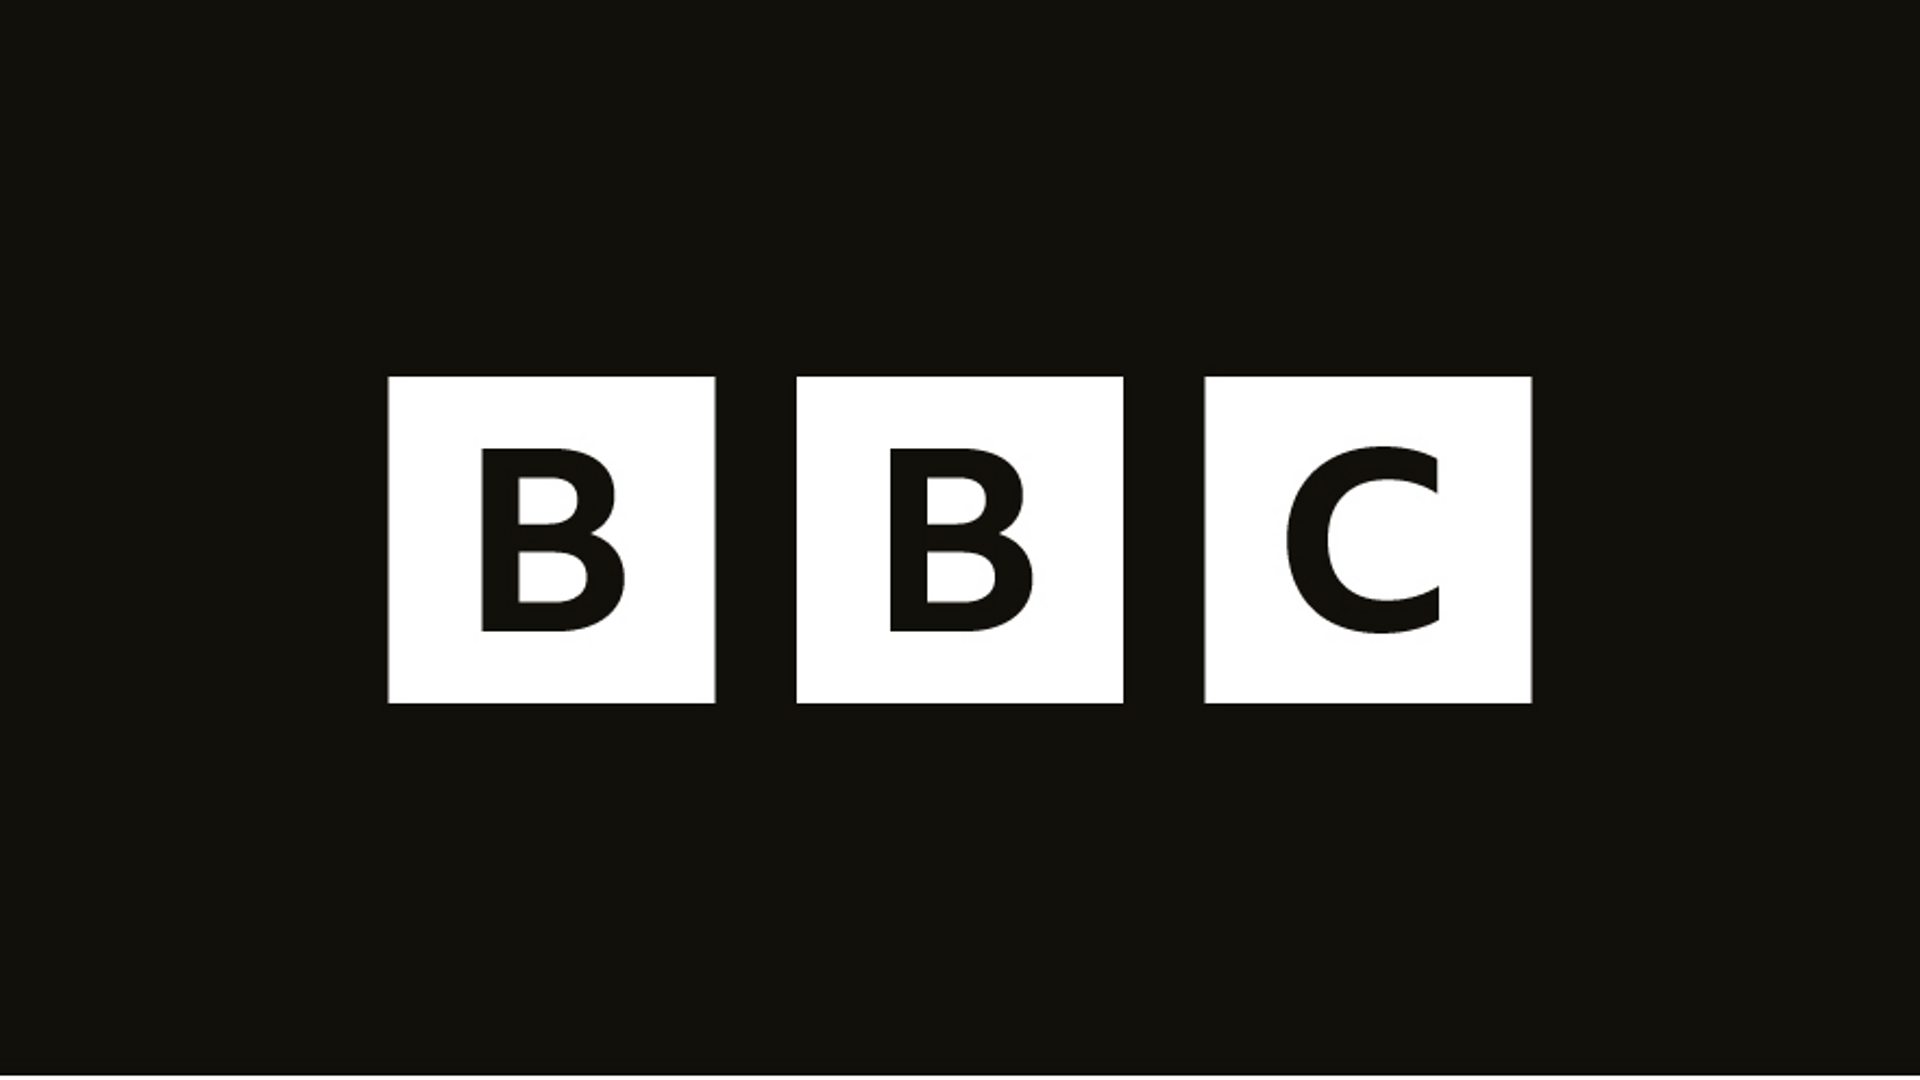 BBC 